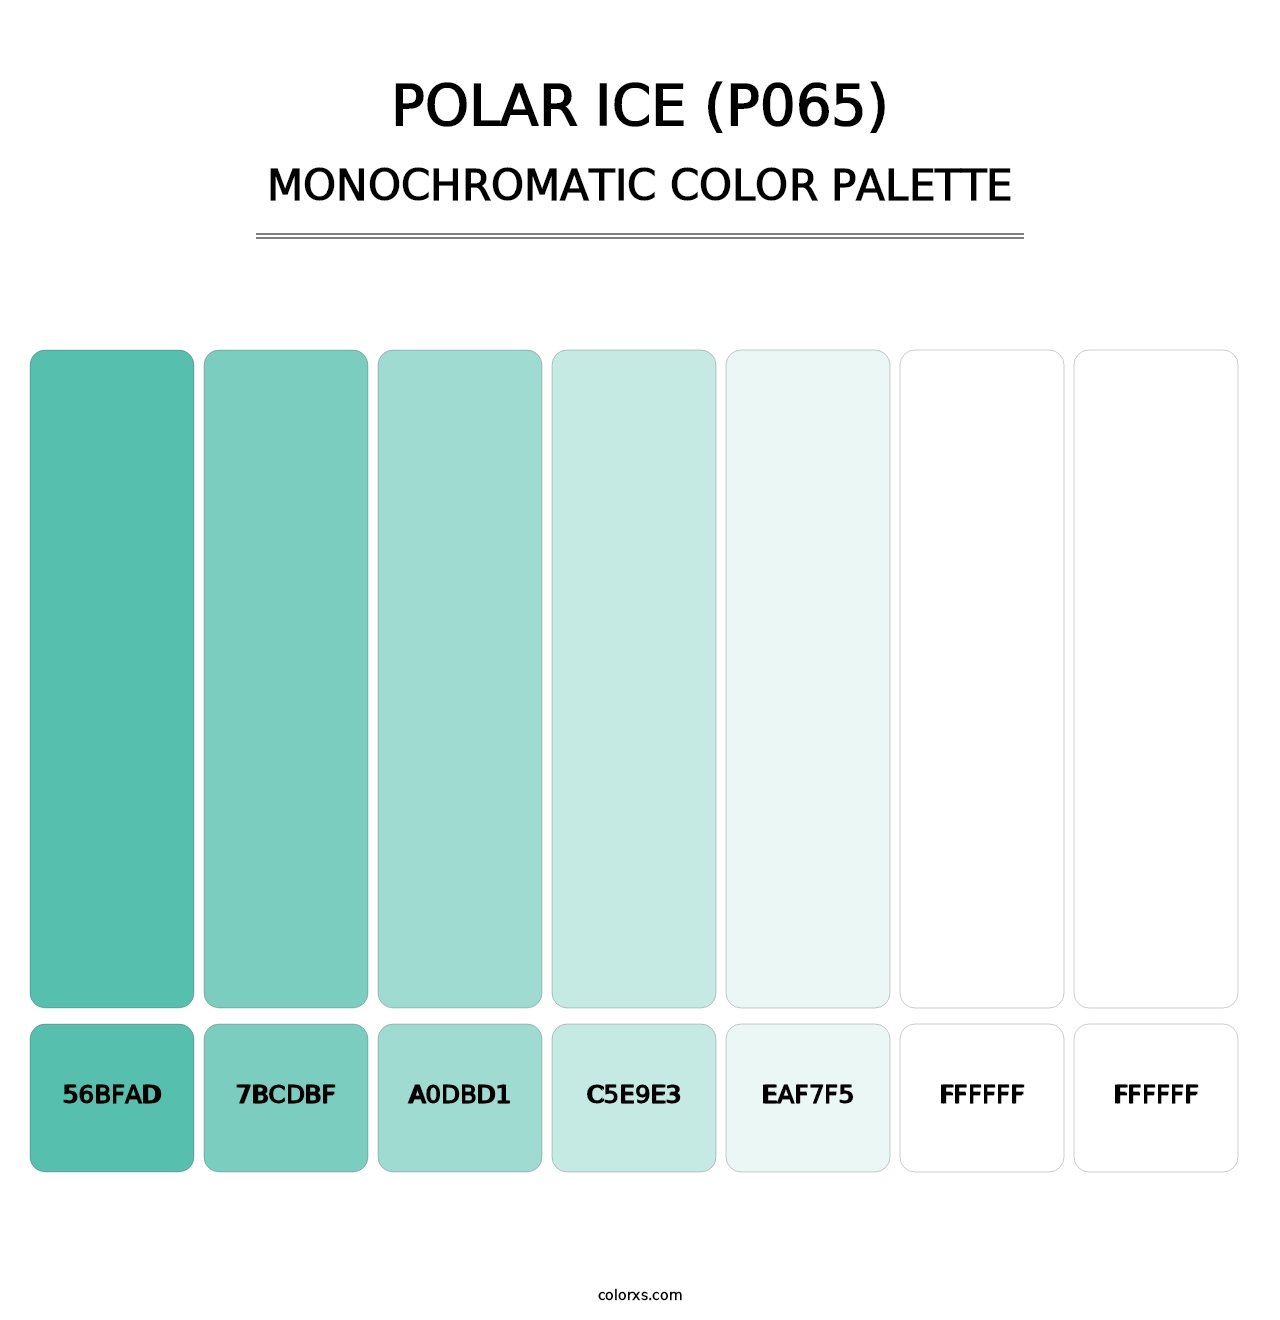 Polar Ice (P065) - Monochromatic Color Palette